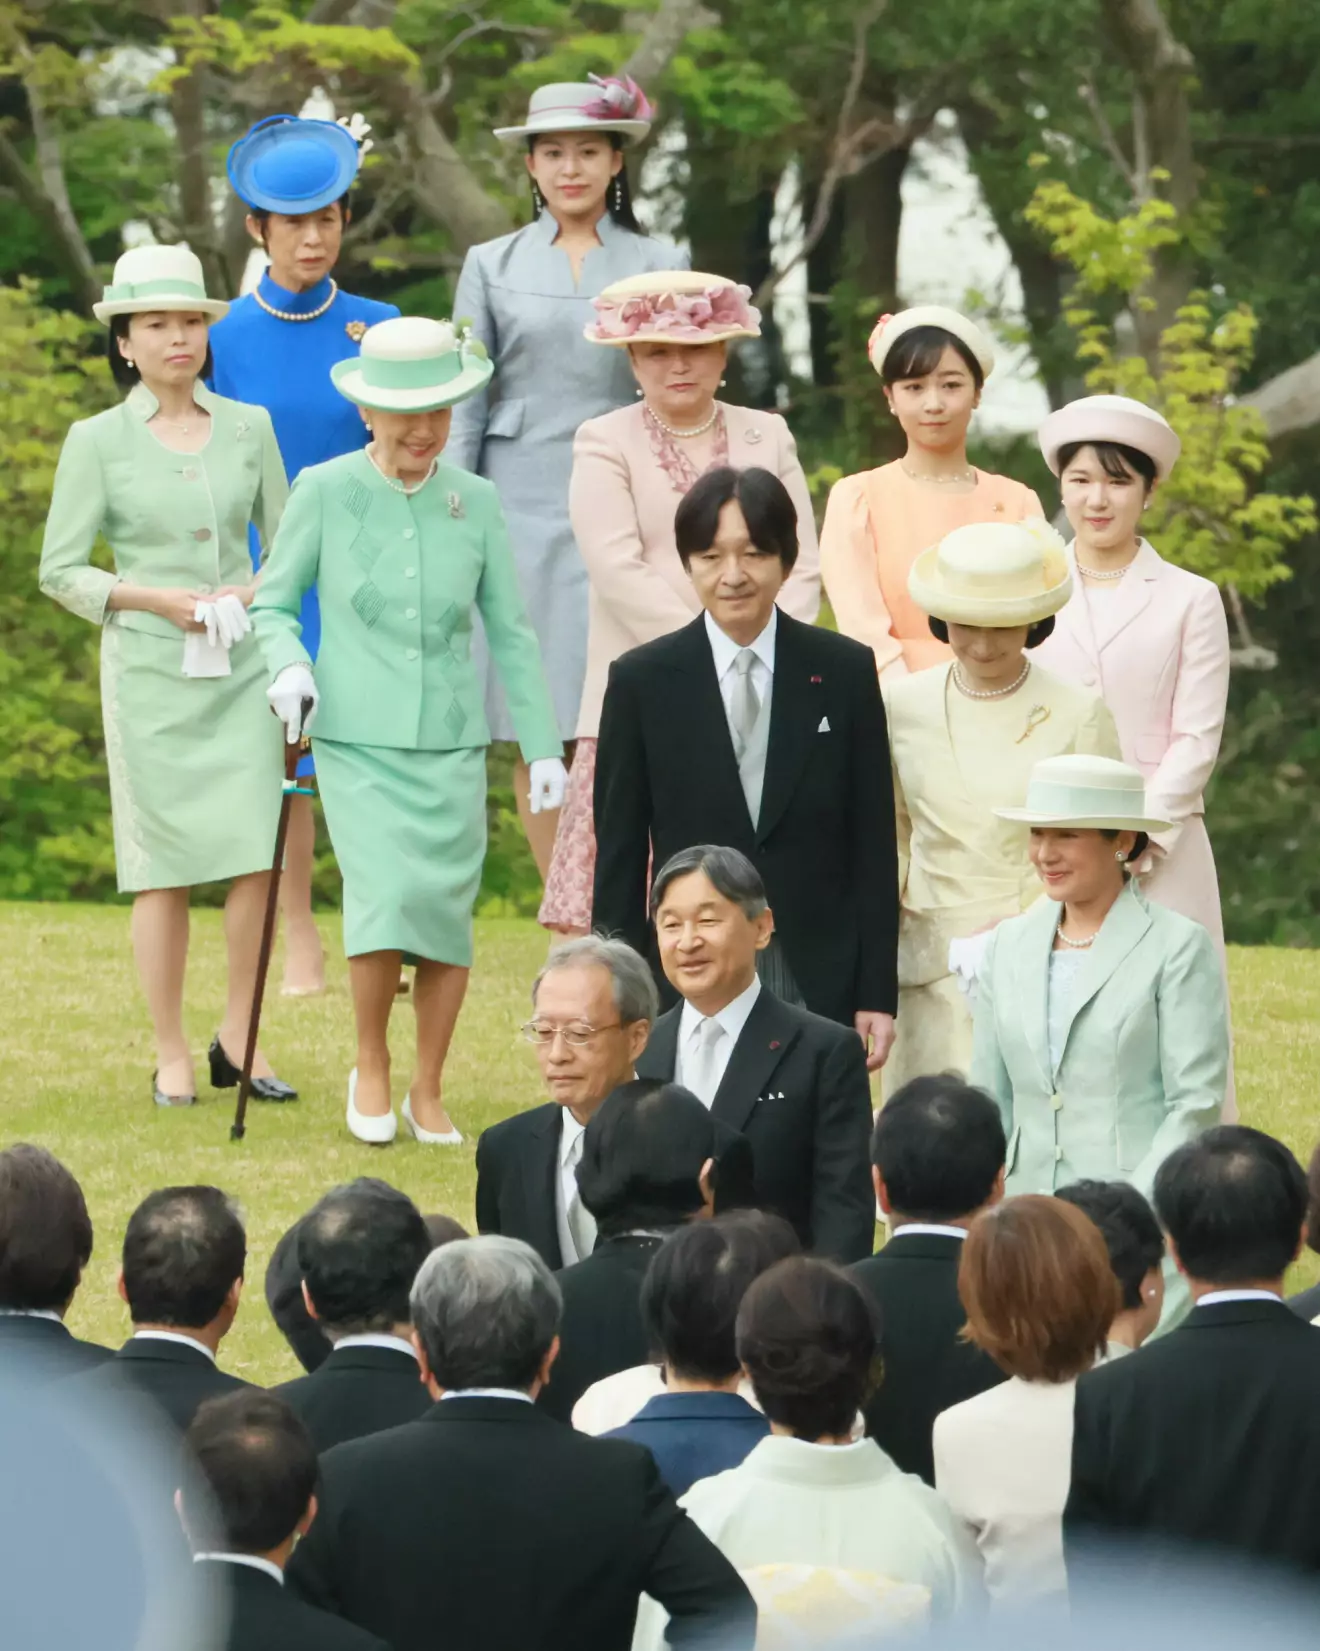 Japanska kejsarfamiljen på gardenparty